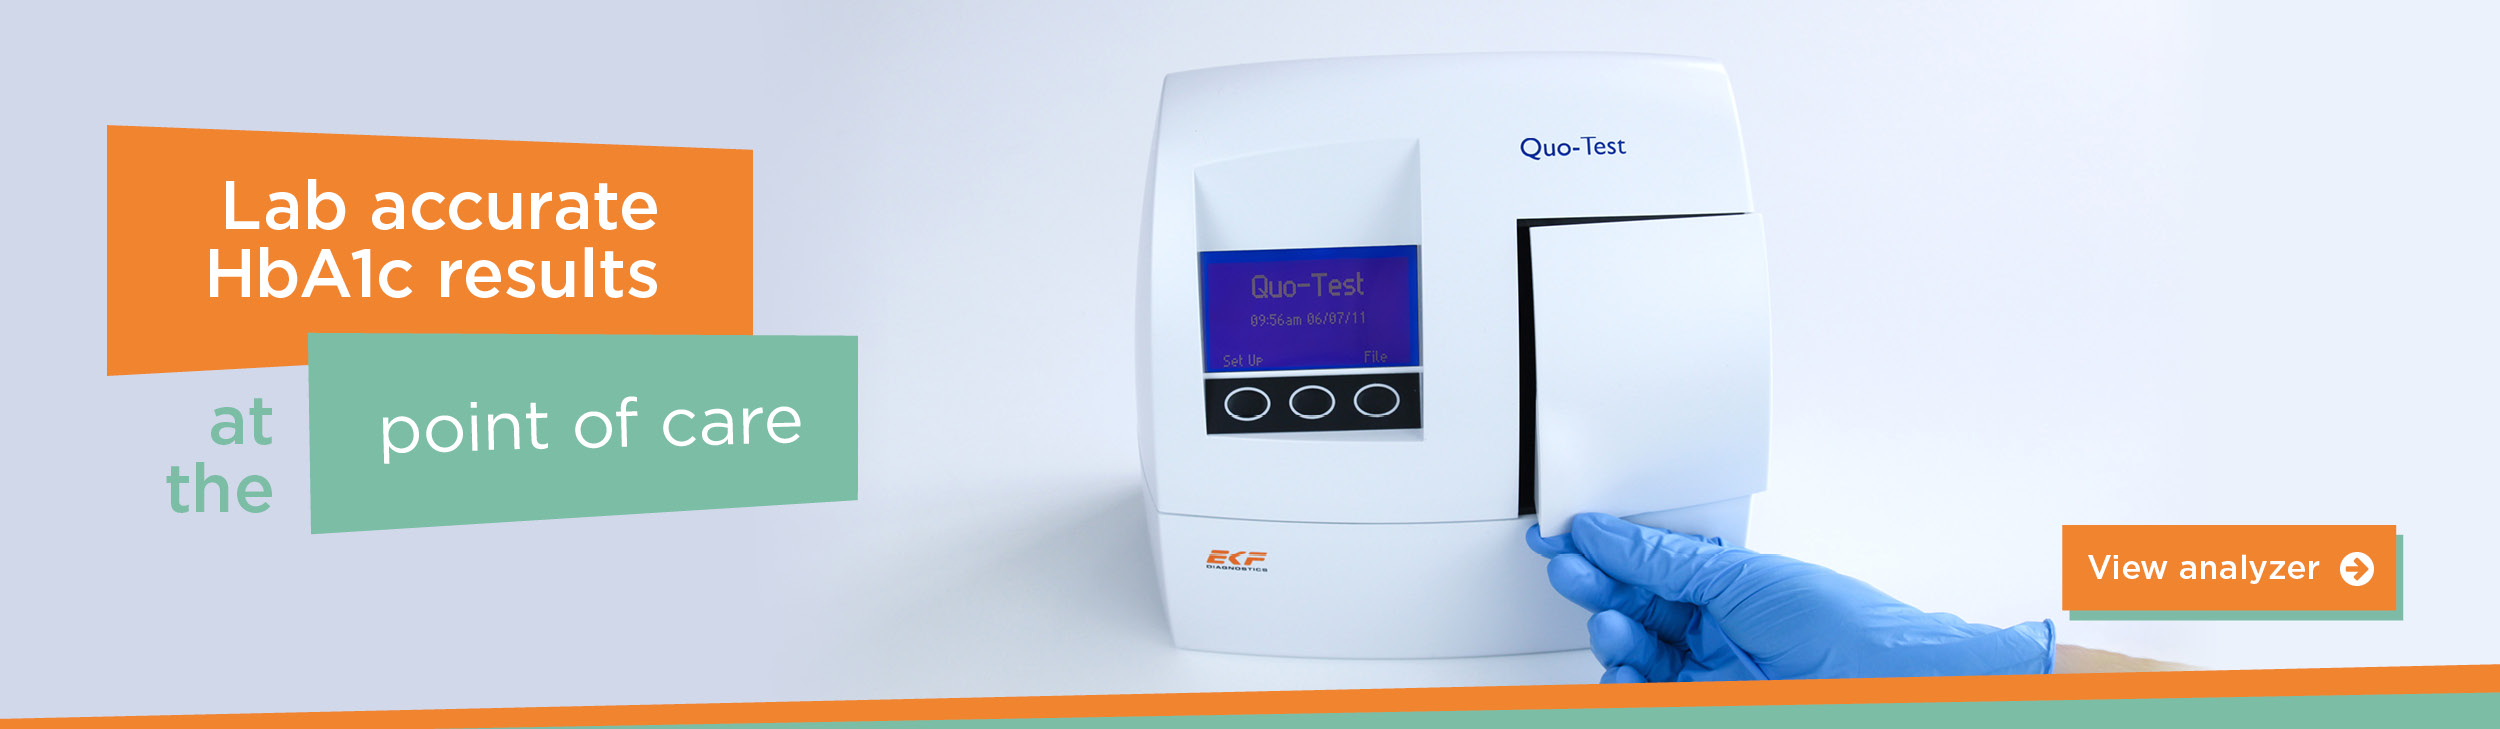 Quo-Test HbA1c analyzer